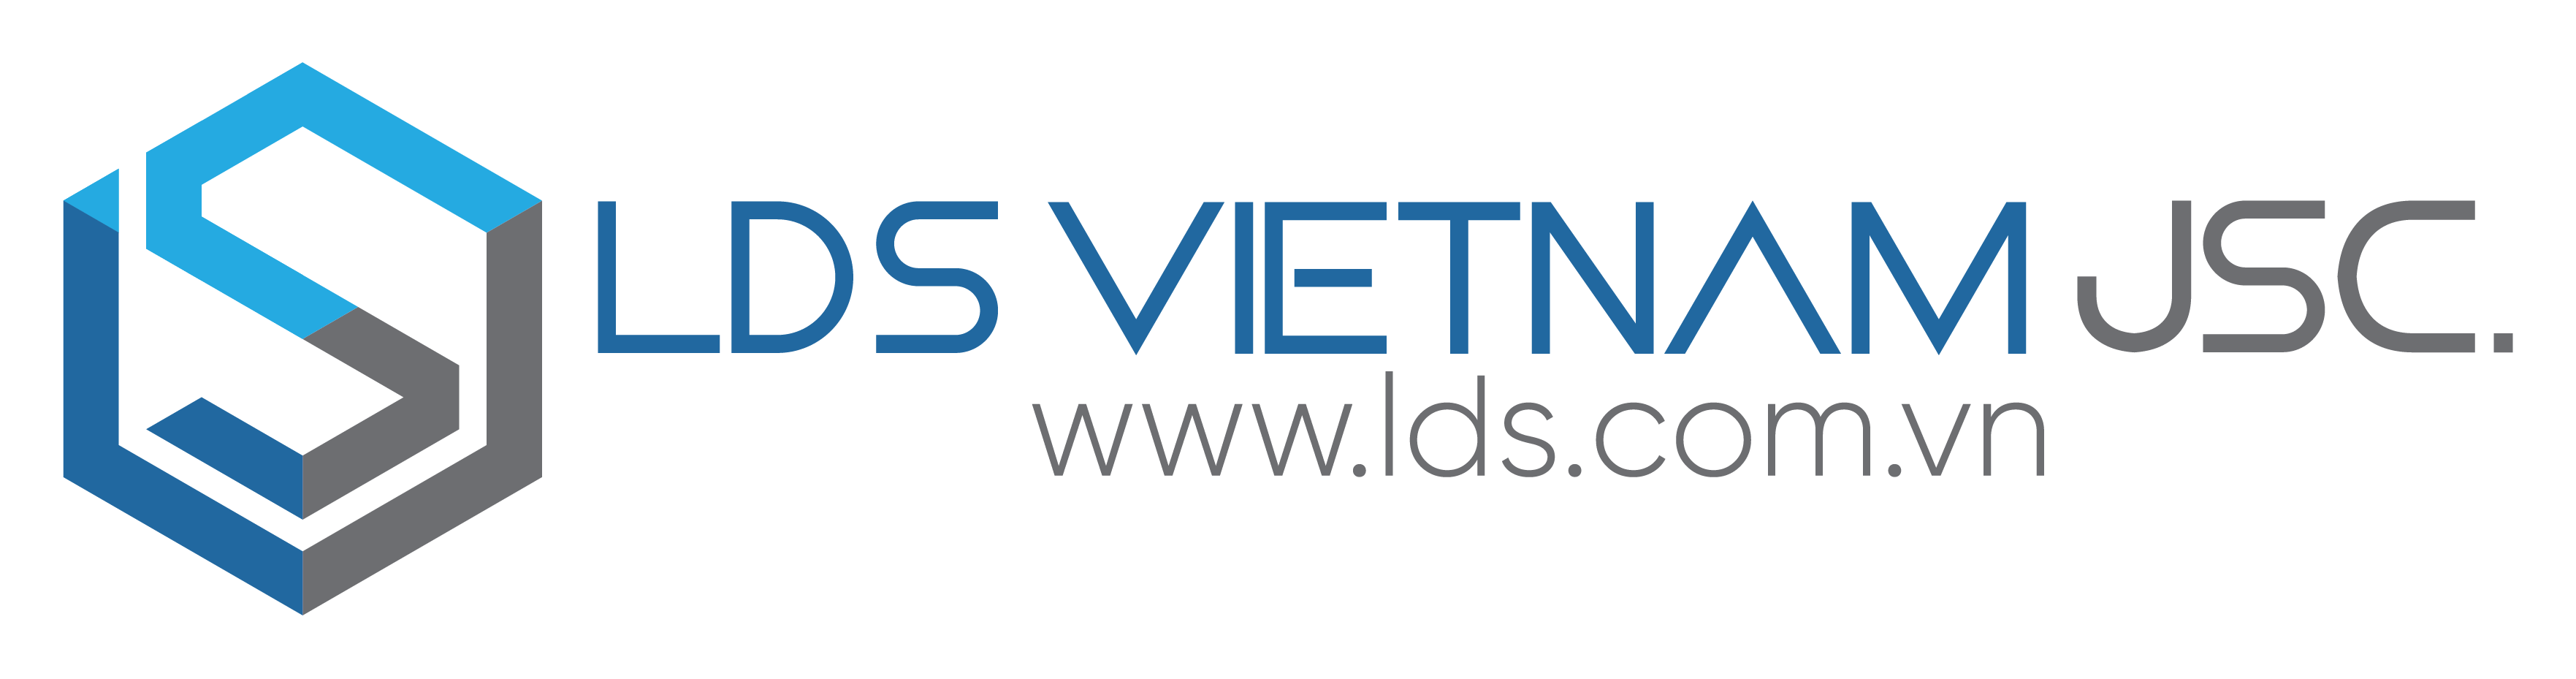 LDS Vietnam